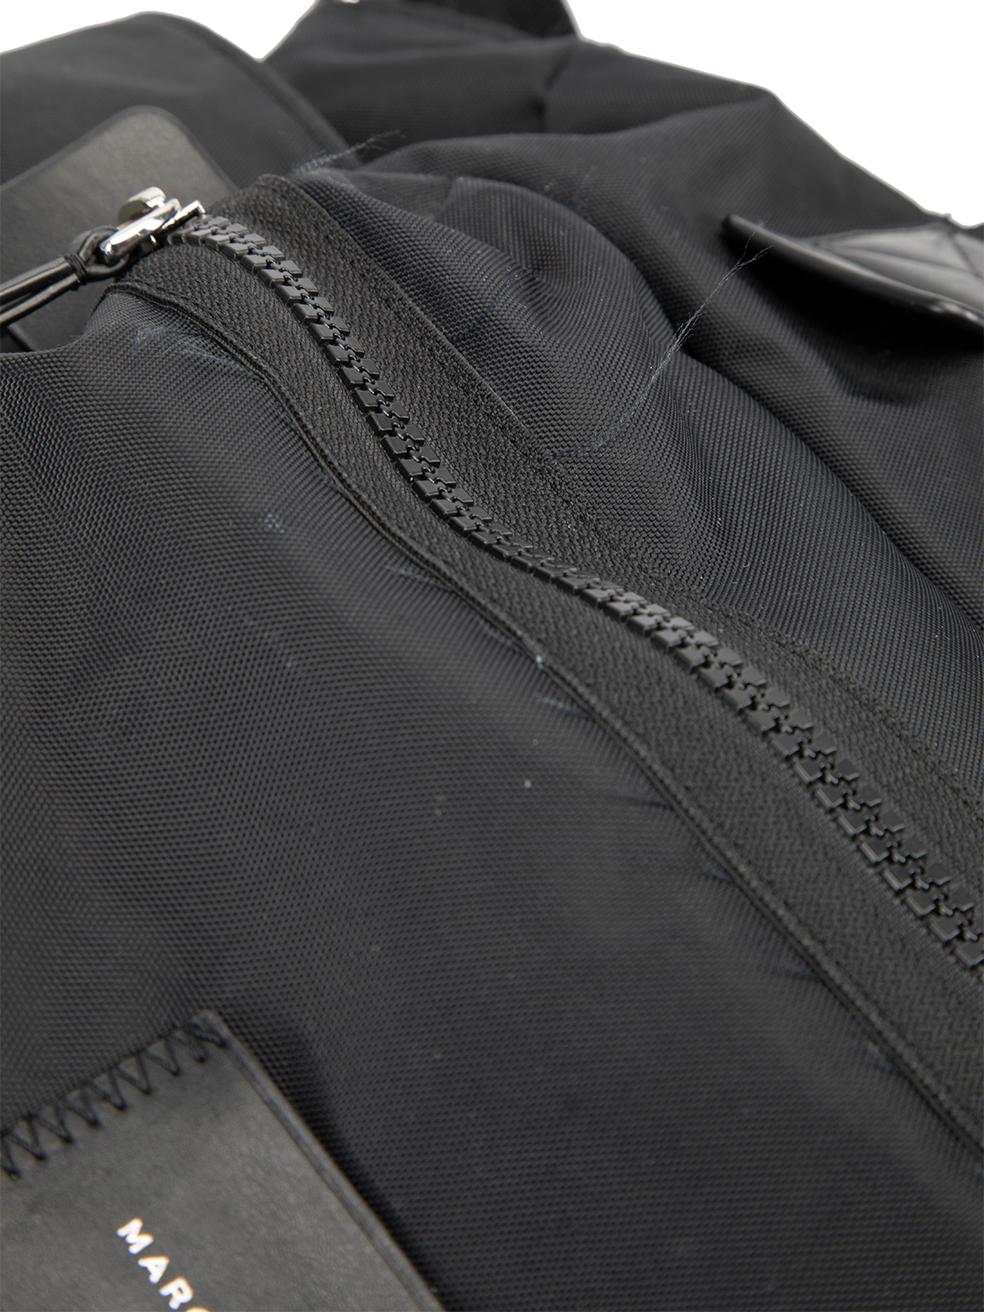 Marc Jacobs Women's Black Canvas Duffle Bag 3